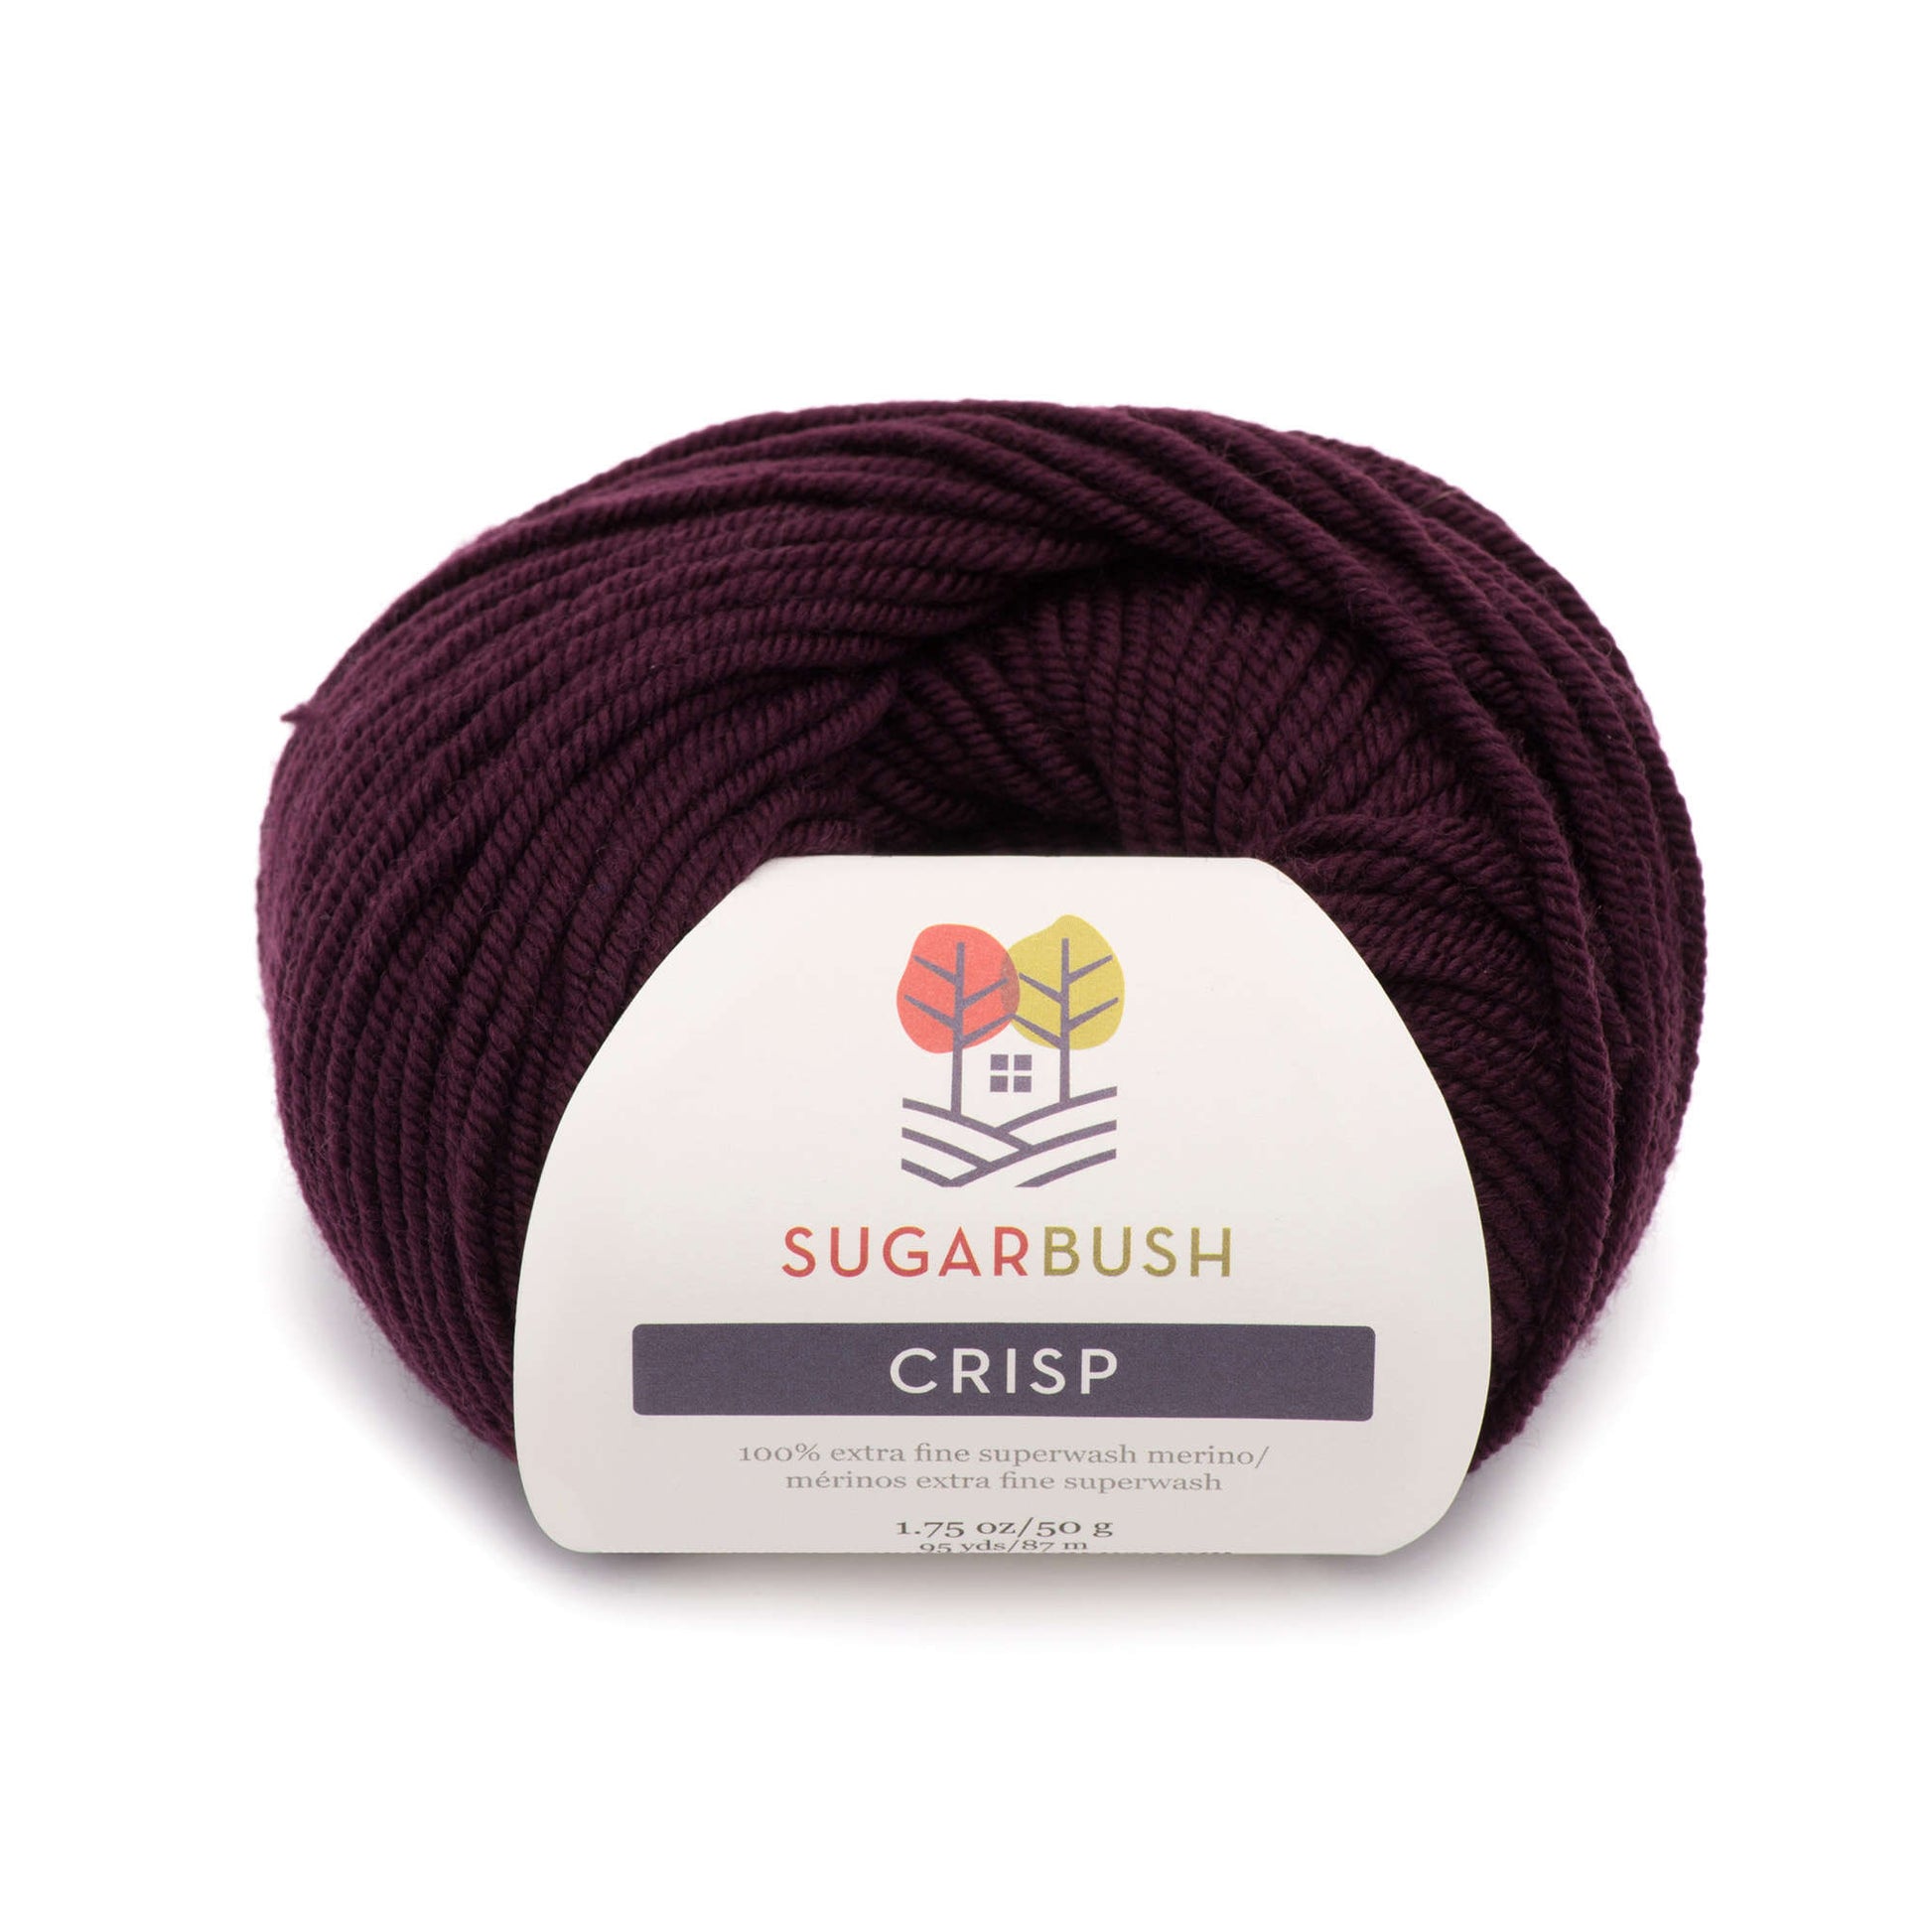 Sugar Bush Crisp Yarn - Discontinued Mulberry